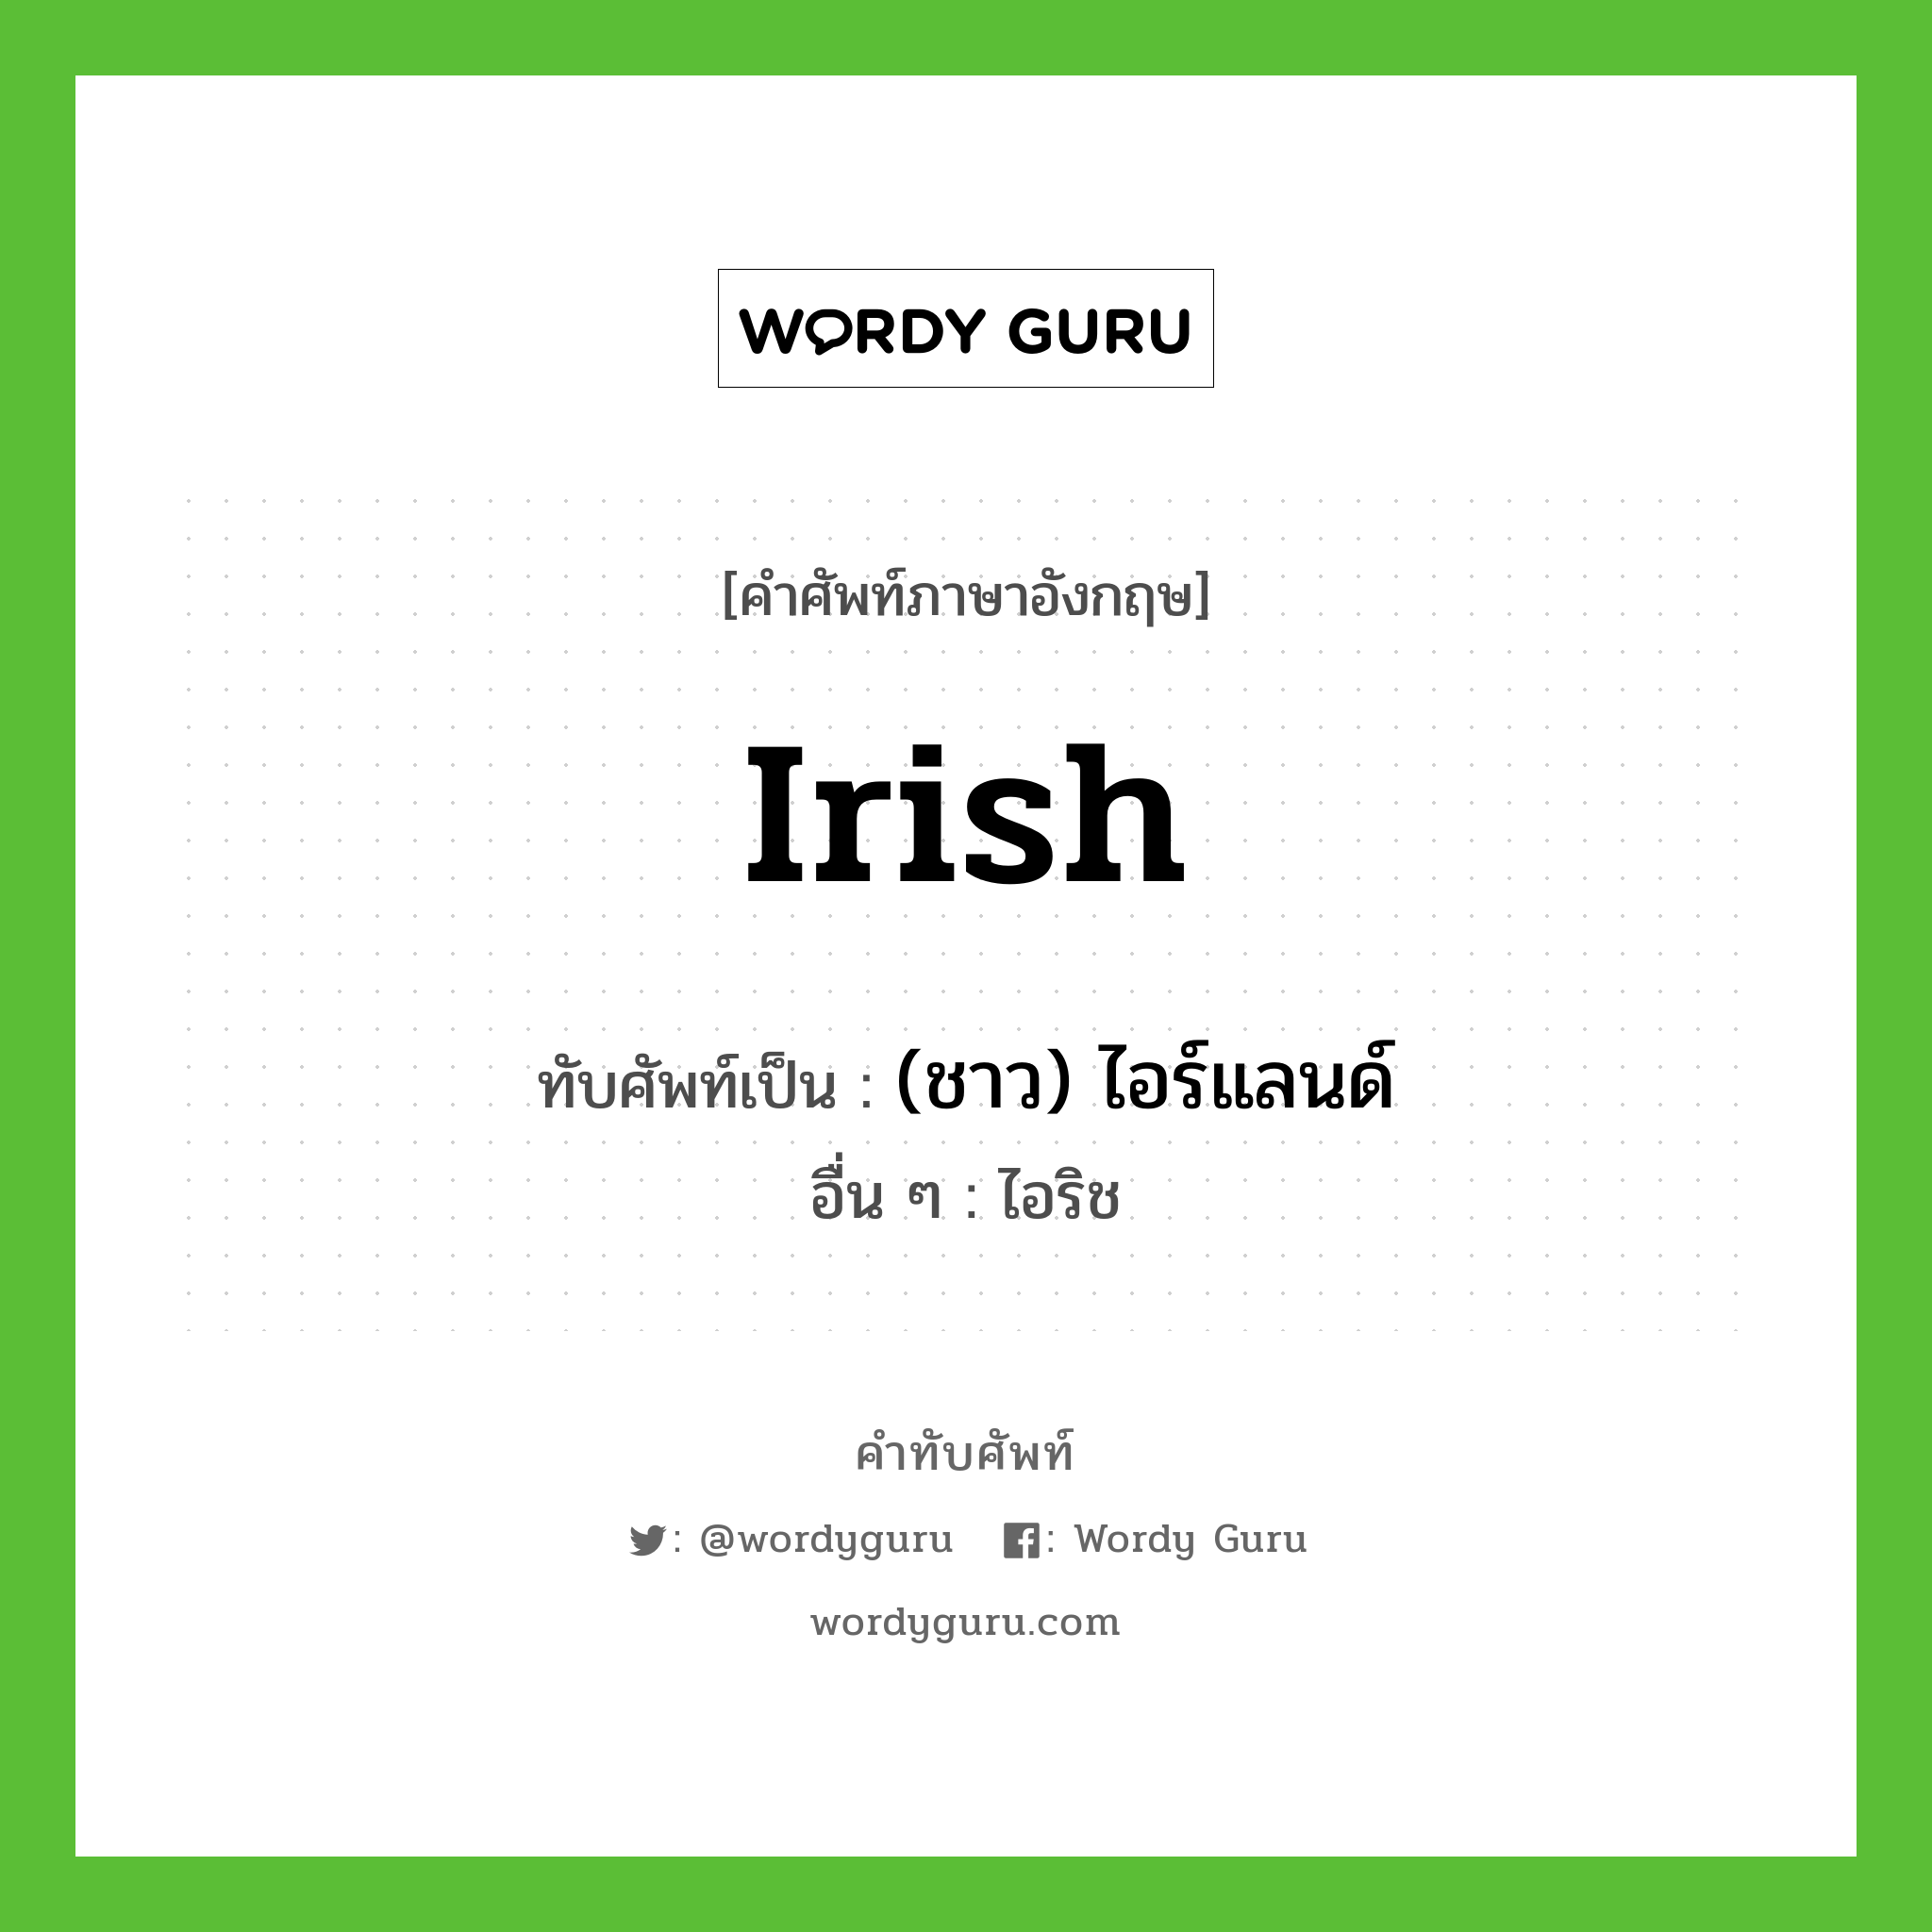 Irish เขียนเป็นคำไทยว่าอะไร?, คำศัพท์ภาษาอังกฤษ Irish ทับศัพท์เป็น (ชาว) ไอร์แลนด์ อื่น ๆ ไอริช